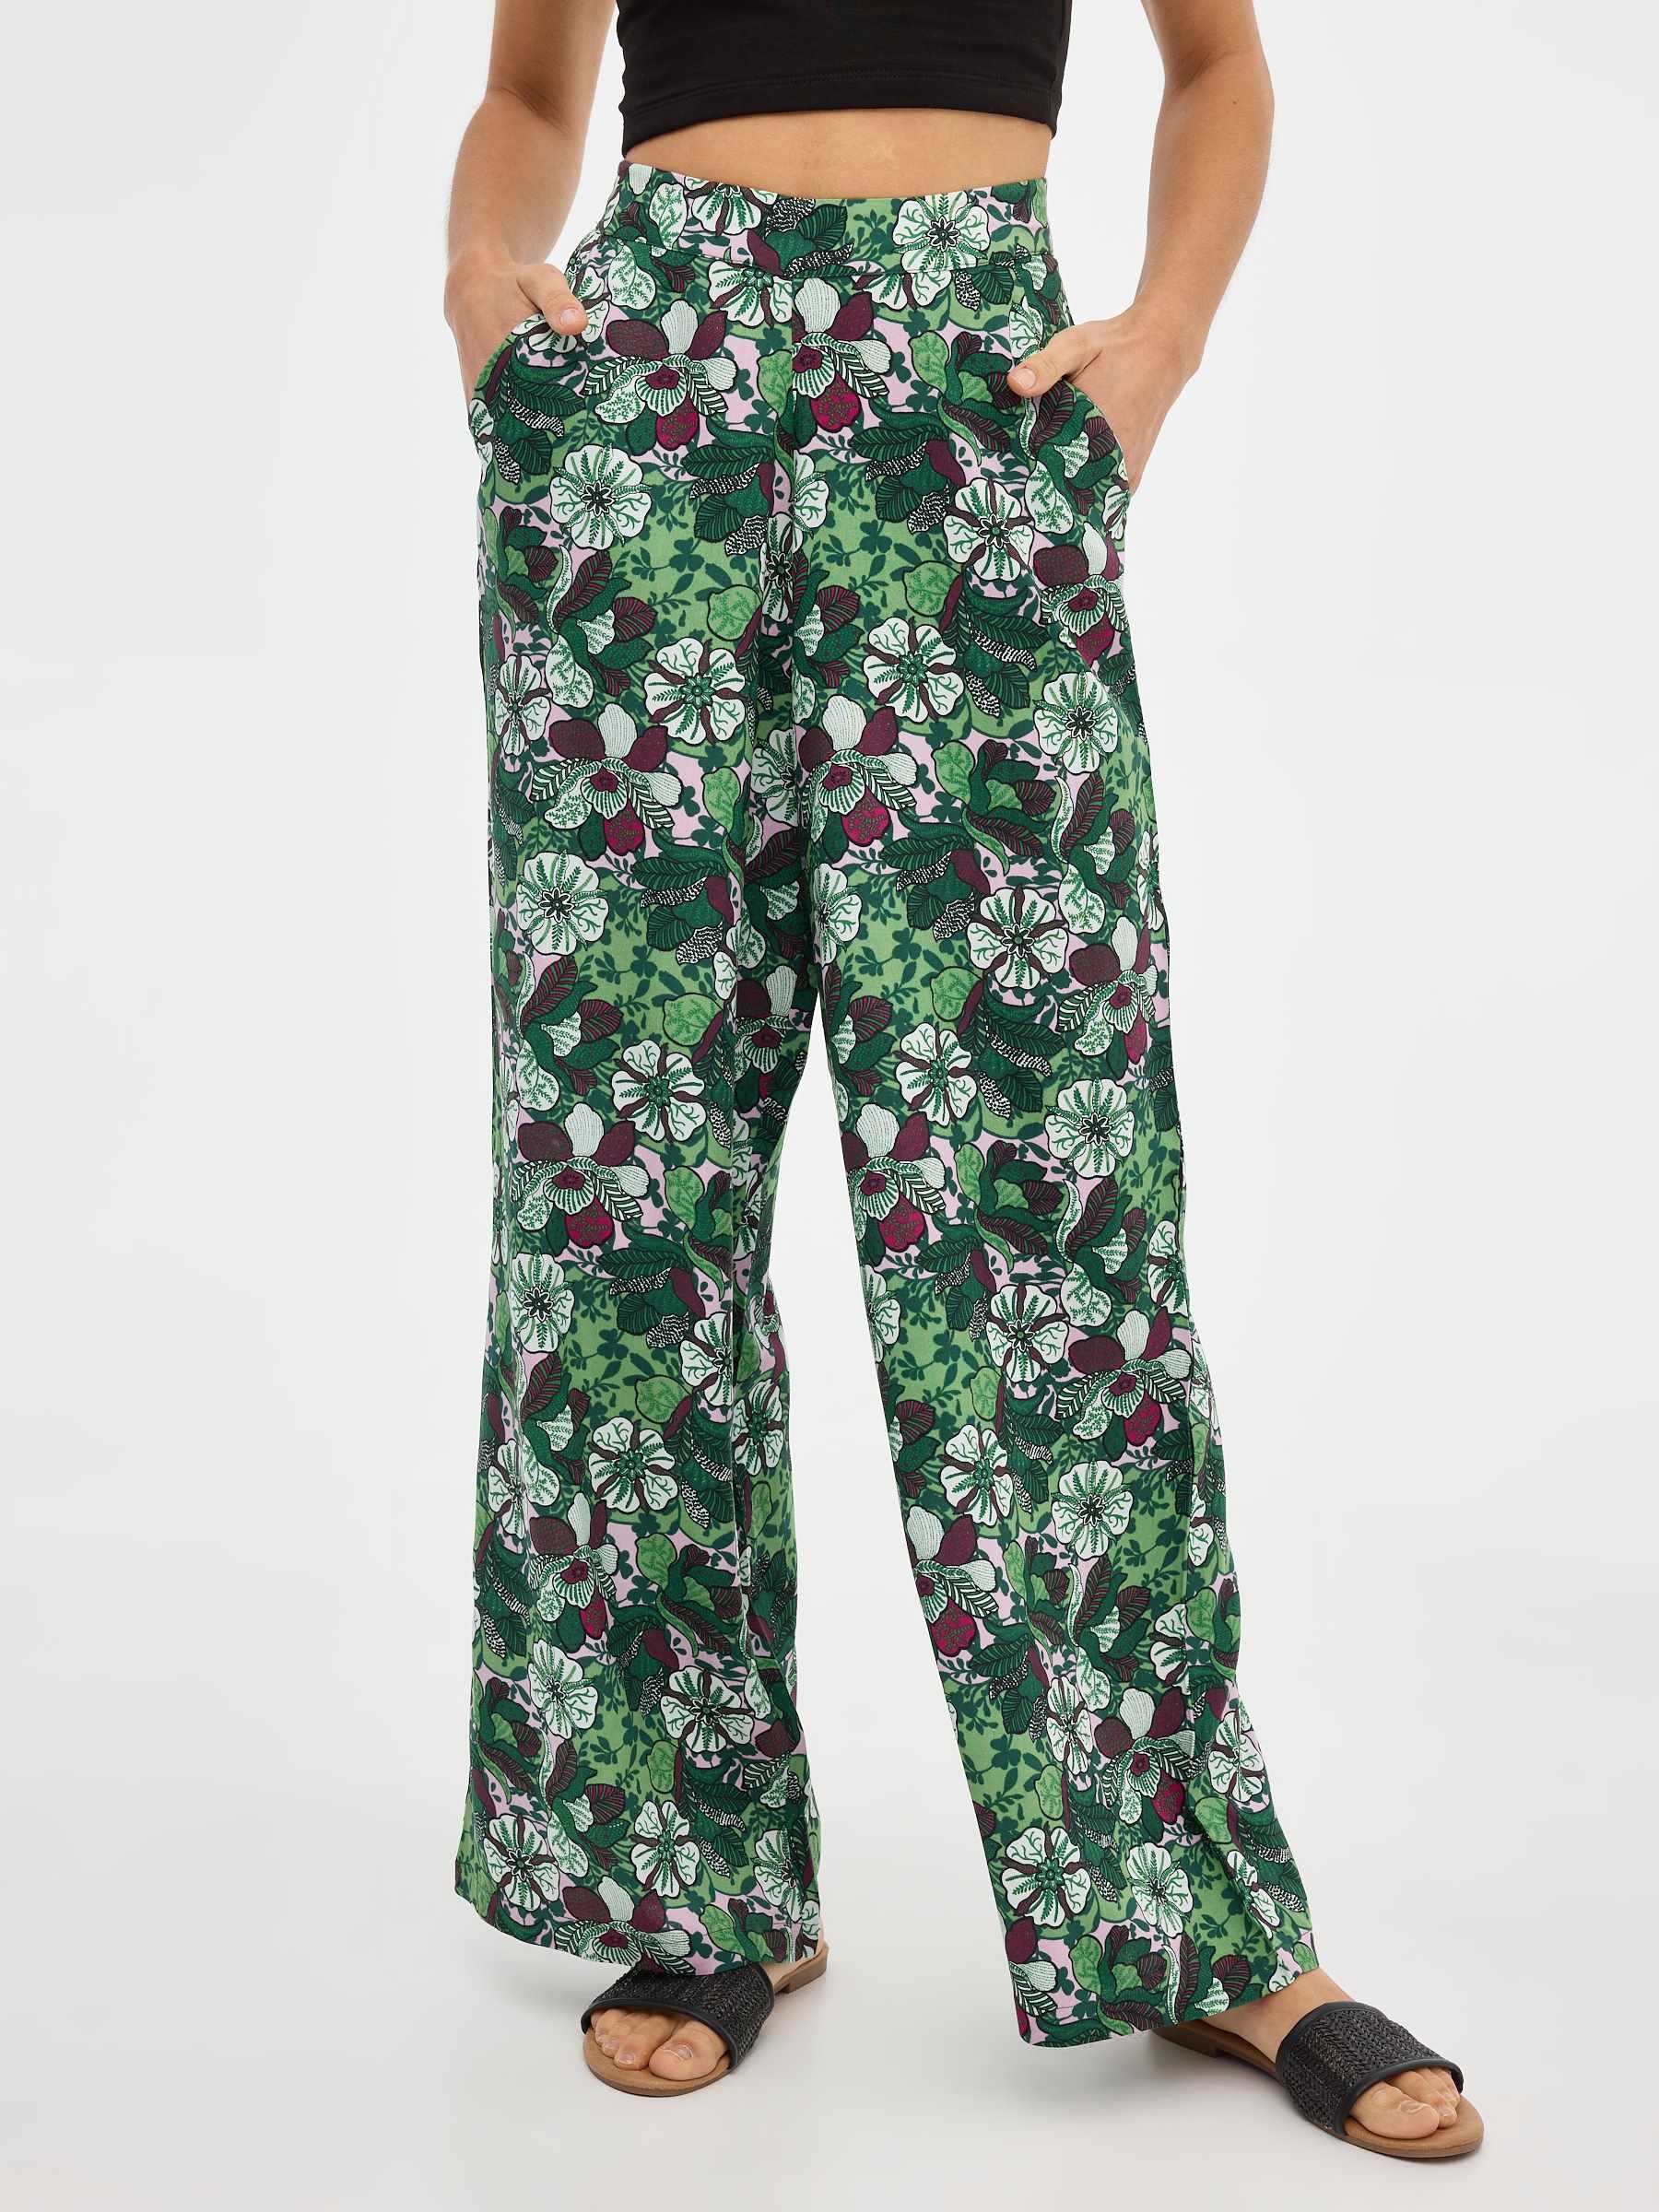 Pantalon fluido estampado floral - Stártara Shop Tienda online